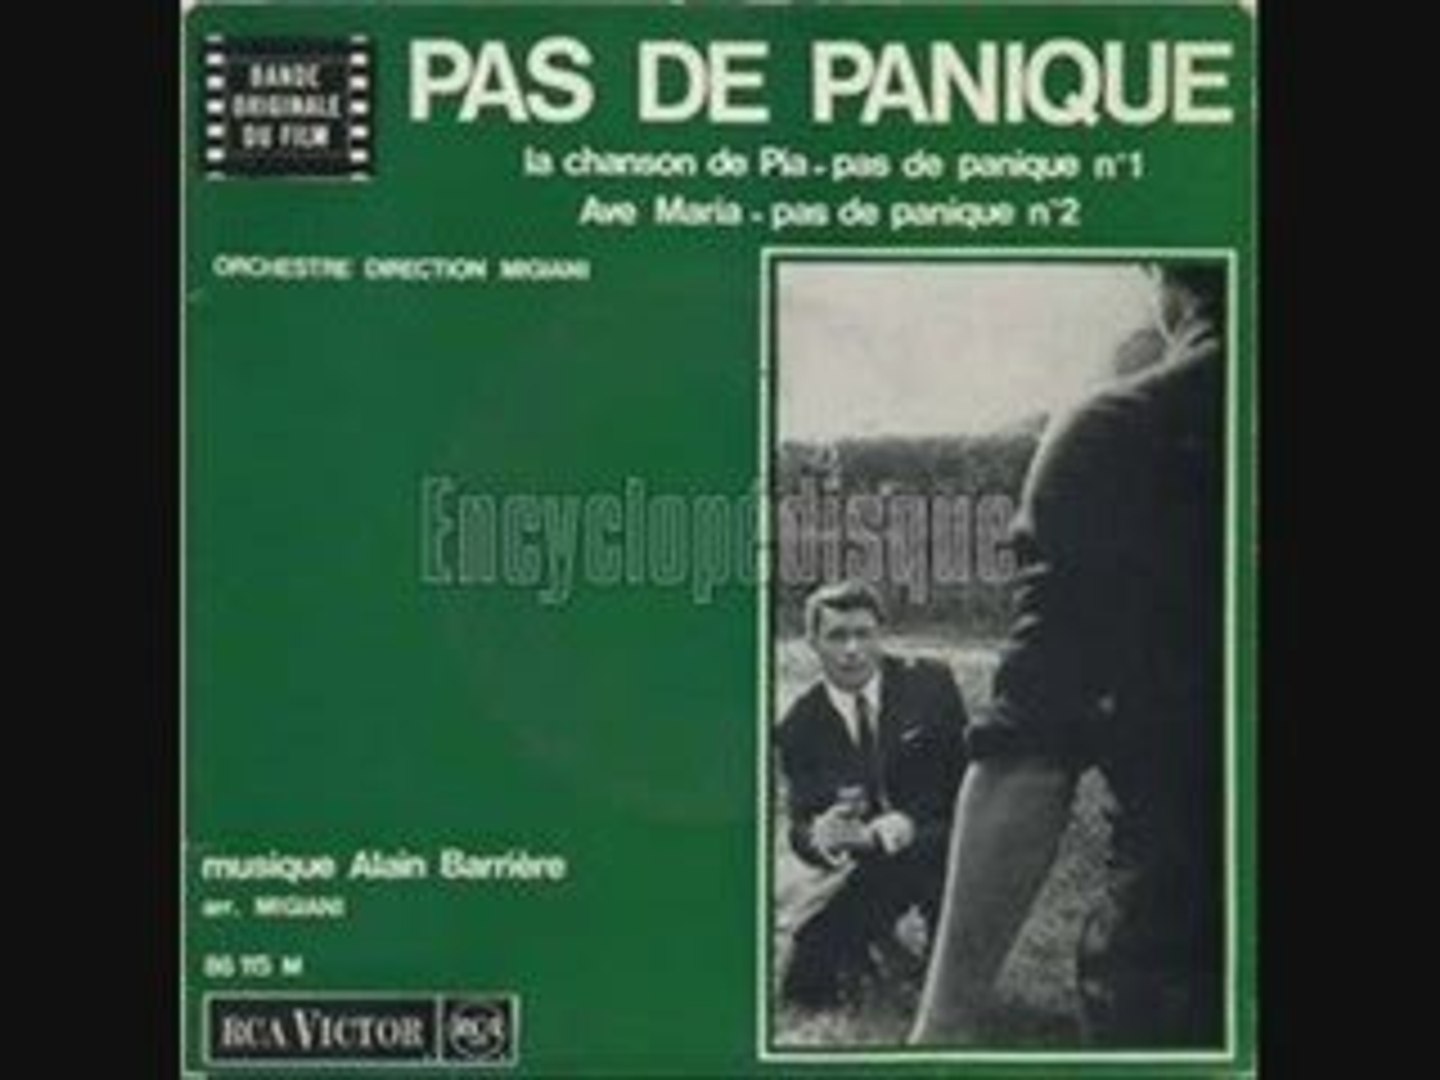 Alain Barrière La chanson de Pia (1965) - Vidéo Dailymotion